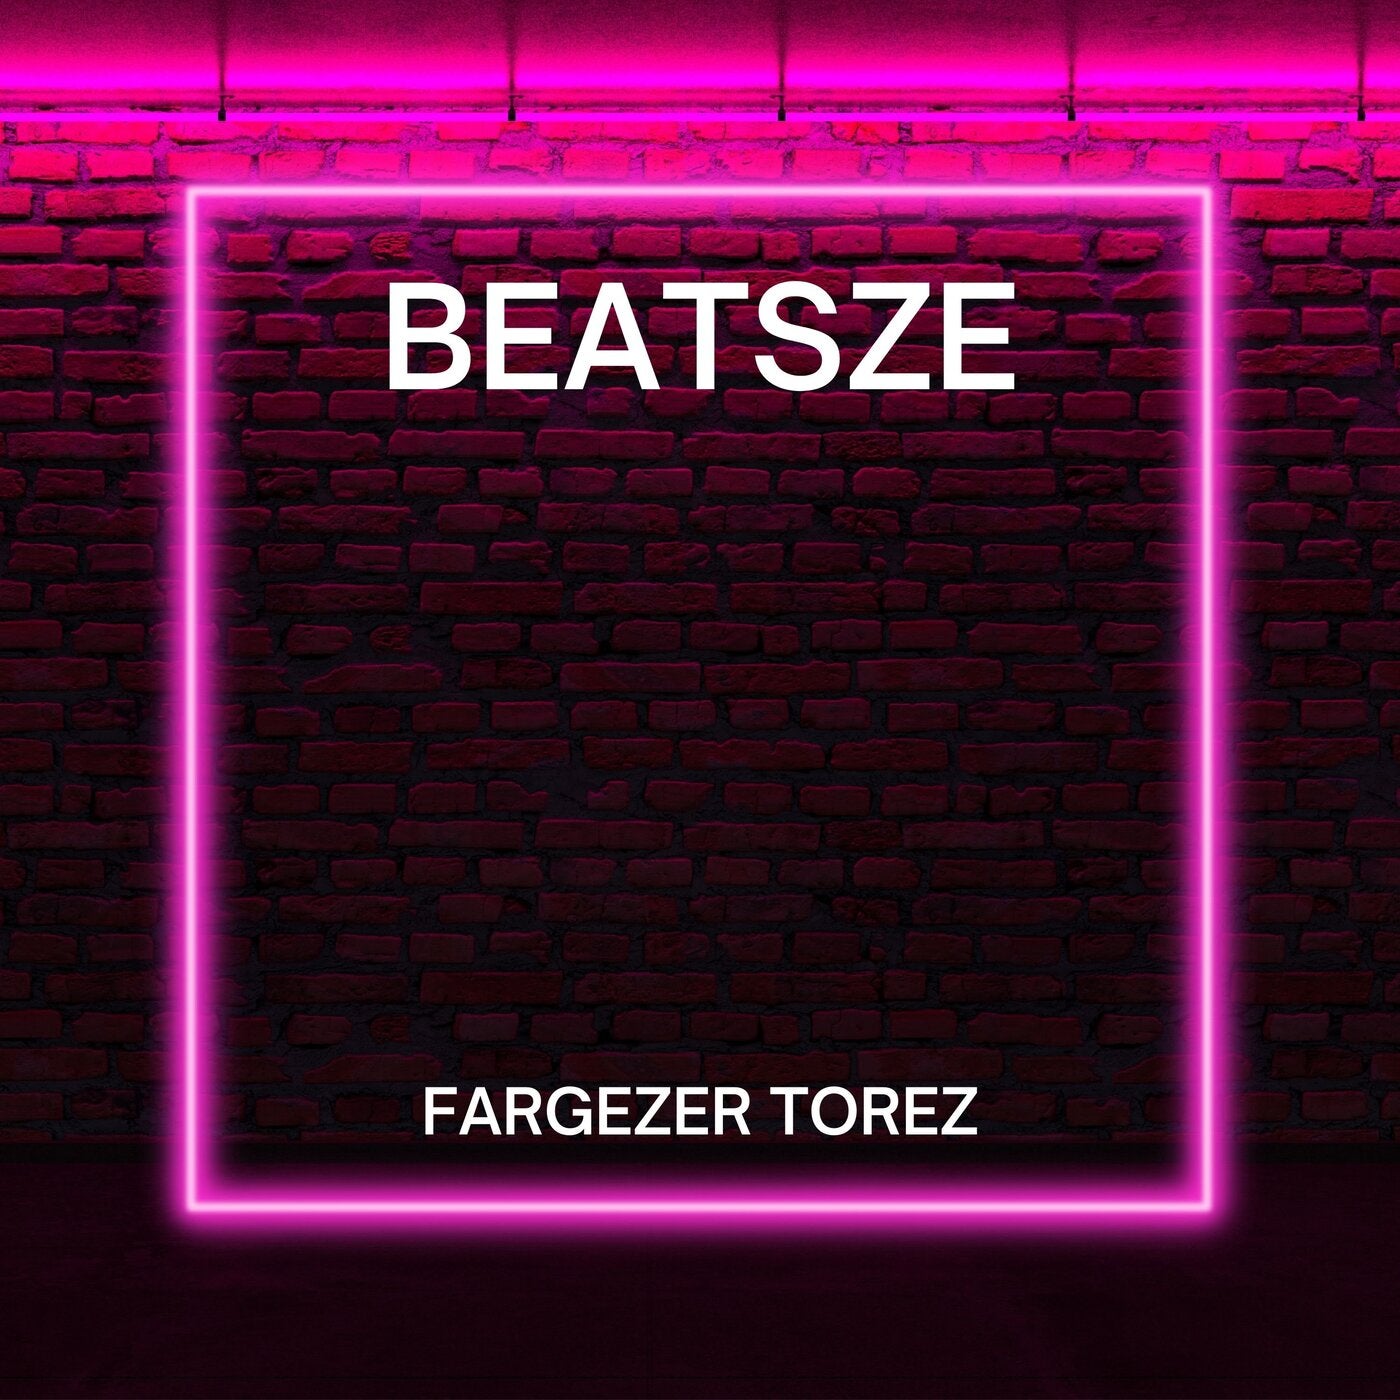 Beatsze